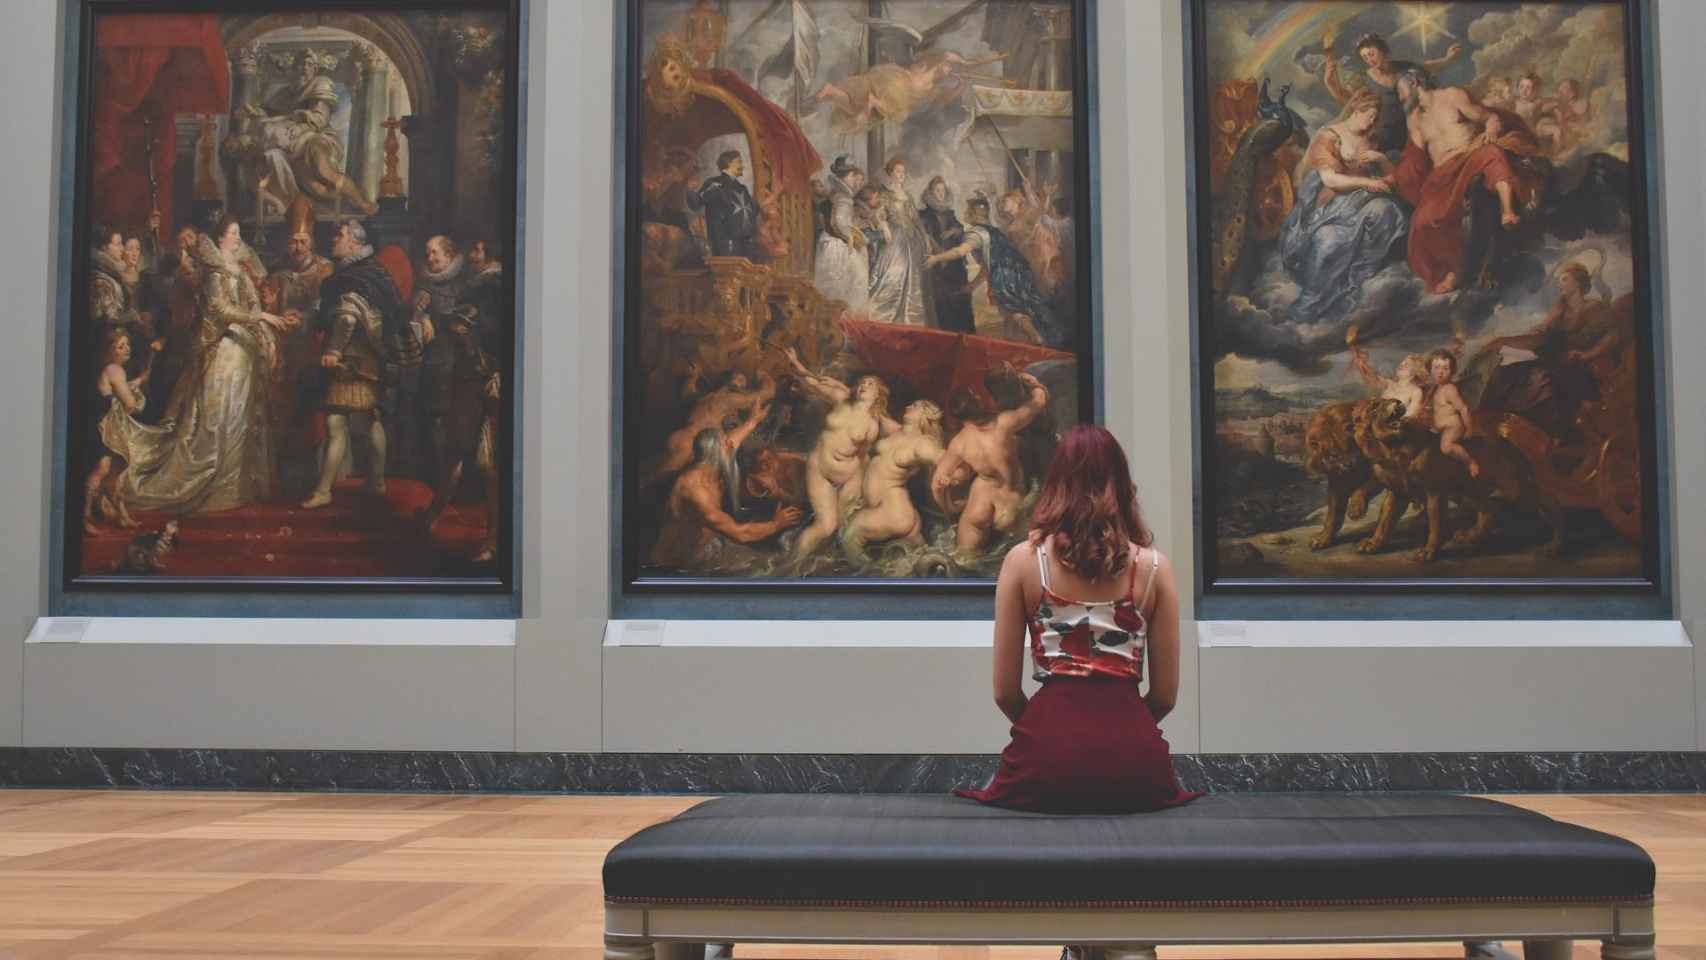 Una chica admirando tres pinturas en el Louvre, uno de los museos más famosos del mundo / PIXABAY